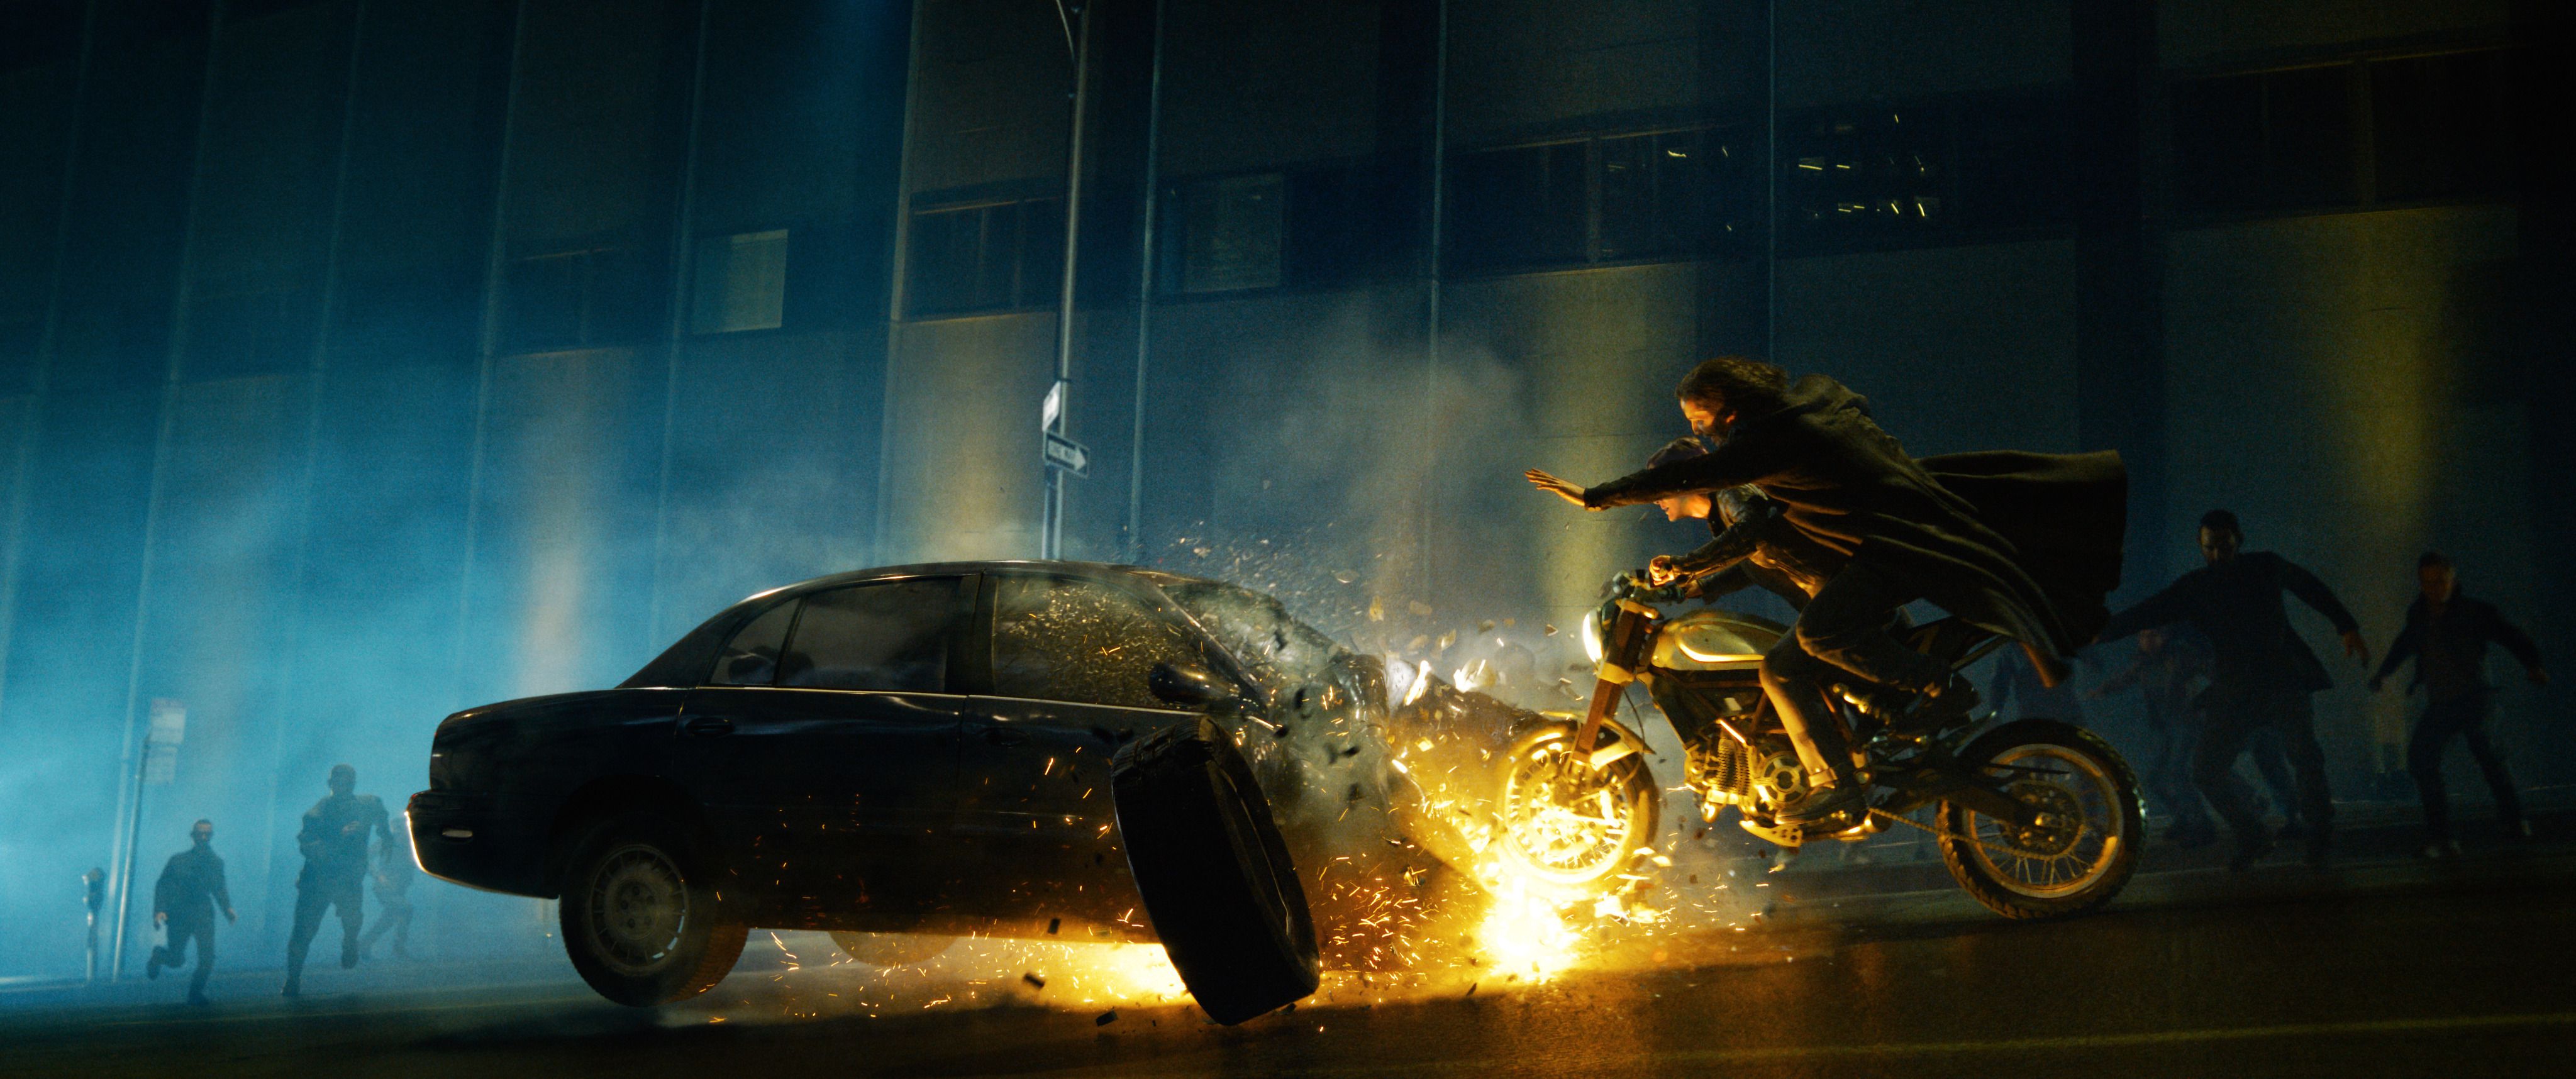 Cenas de ação continuam muito boas, mas apenas elas resumem o que é Matrix? (Imagem: Divulgação/Warner Bros.)